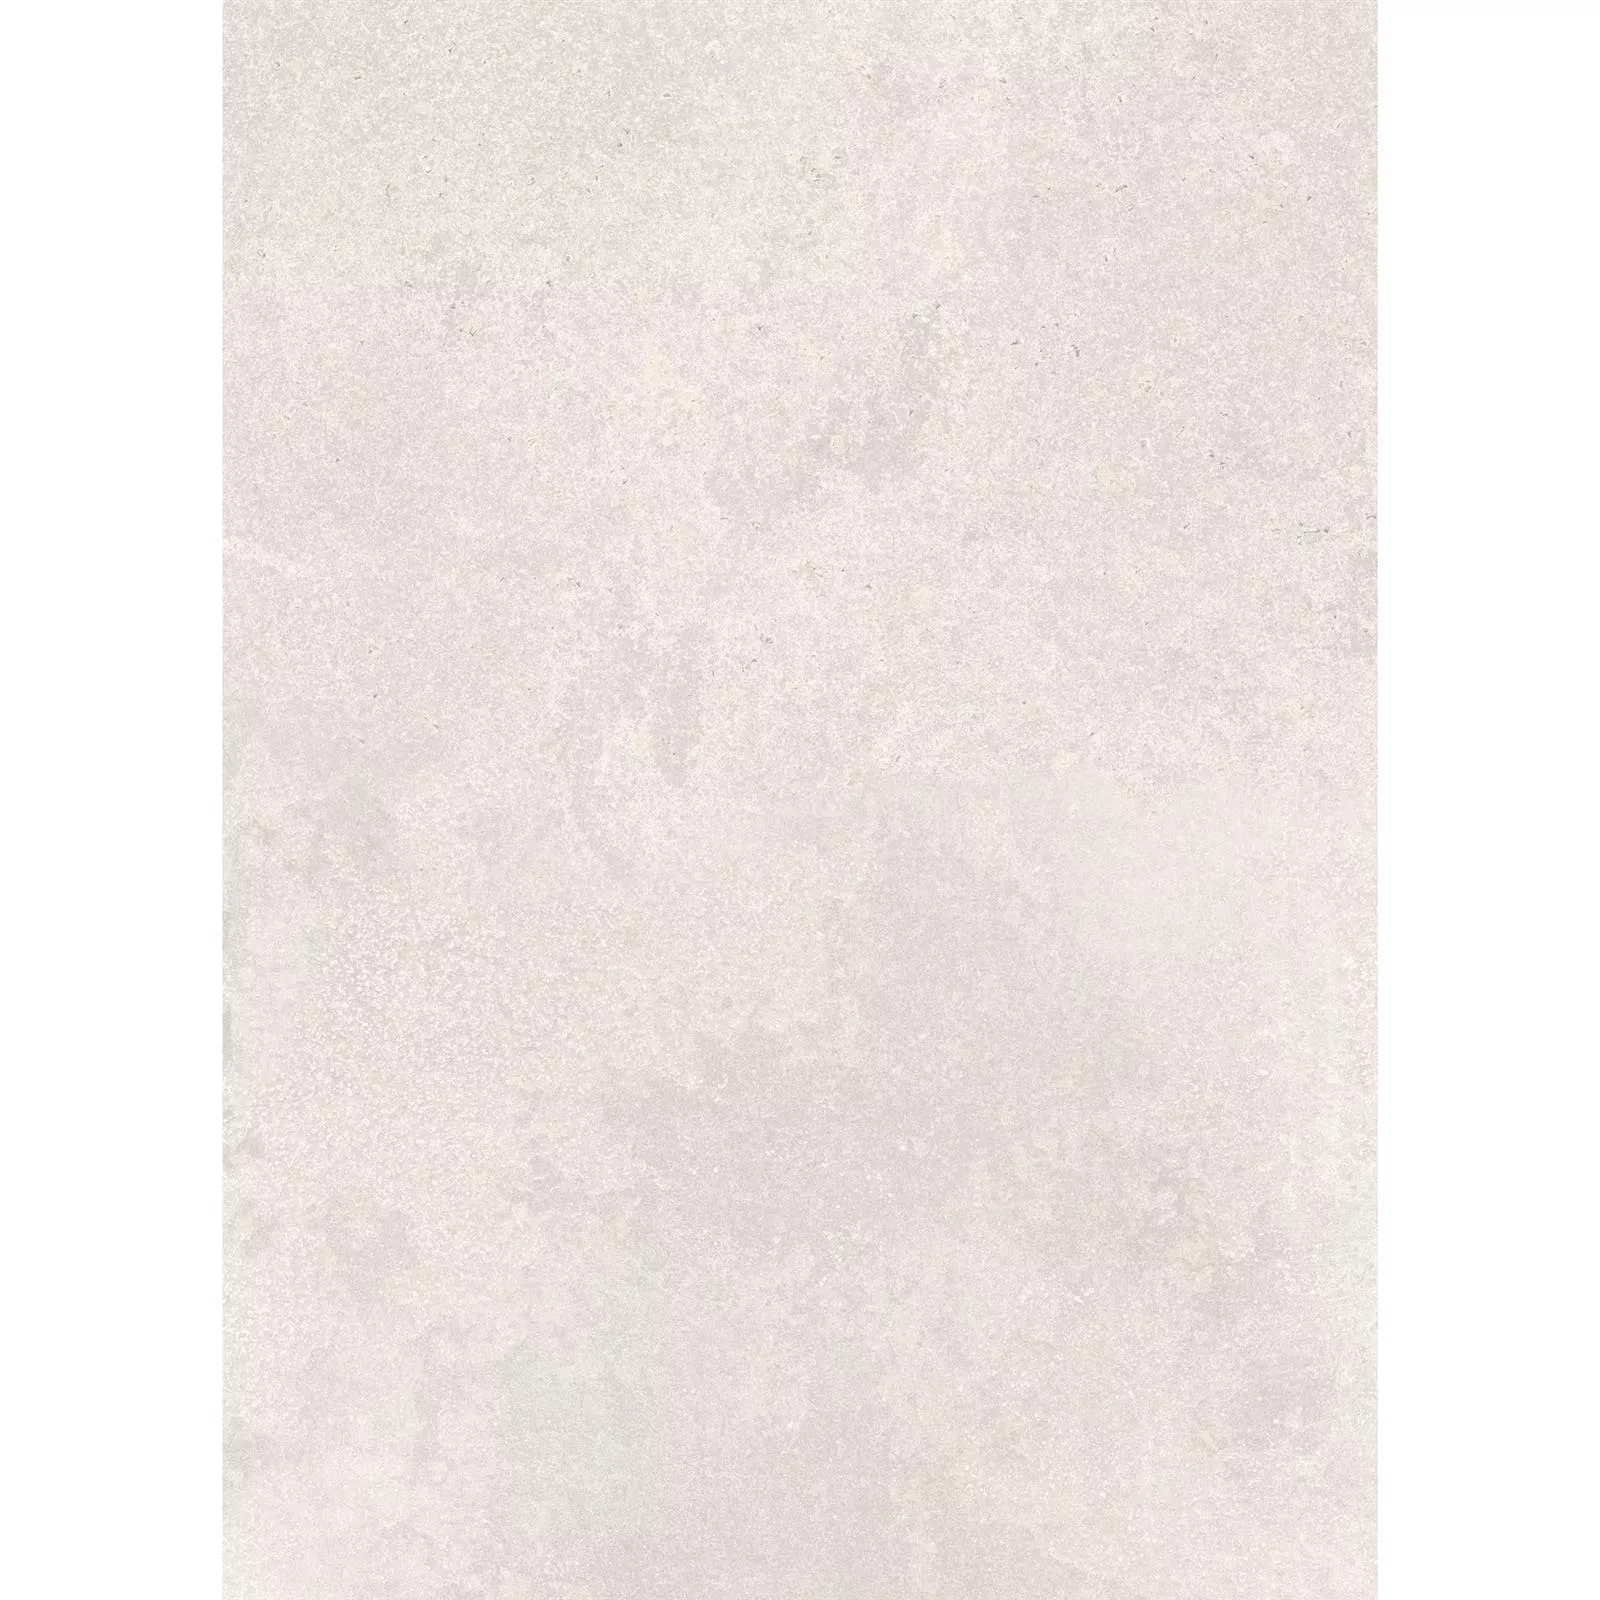 Vzorek Podlahové Dlaždice Kámen Vzhled Horizon Béžová 60x120cm